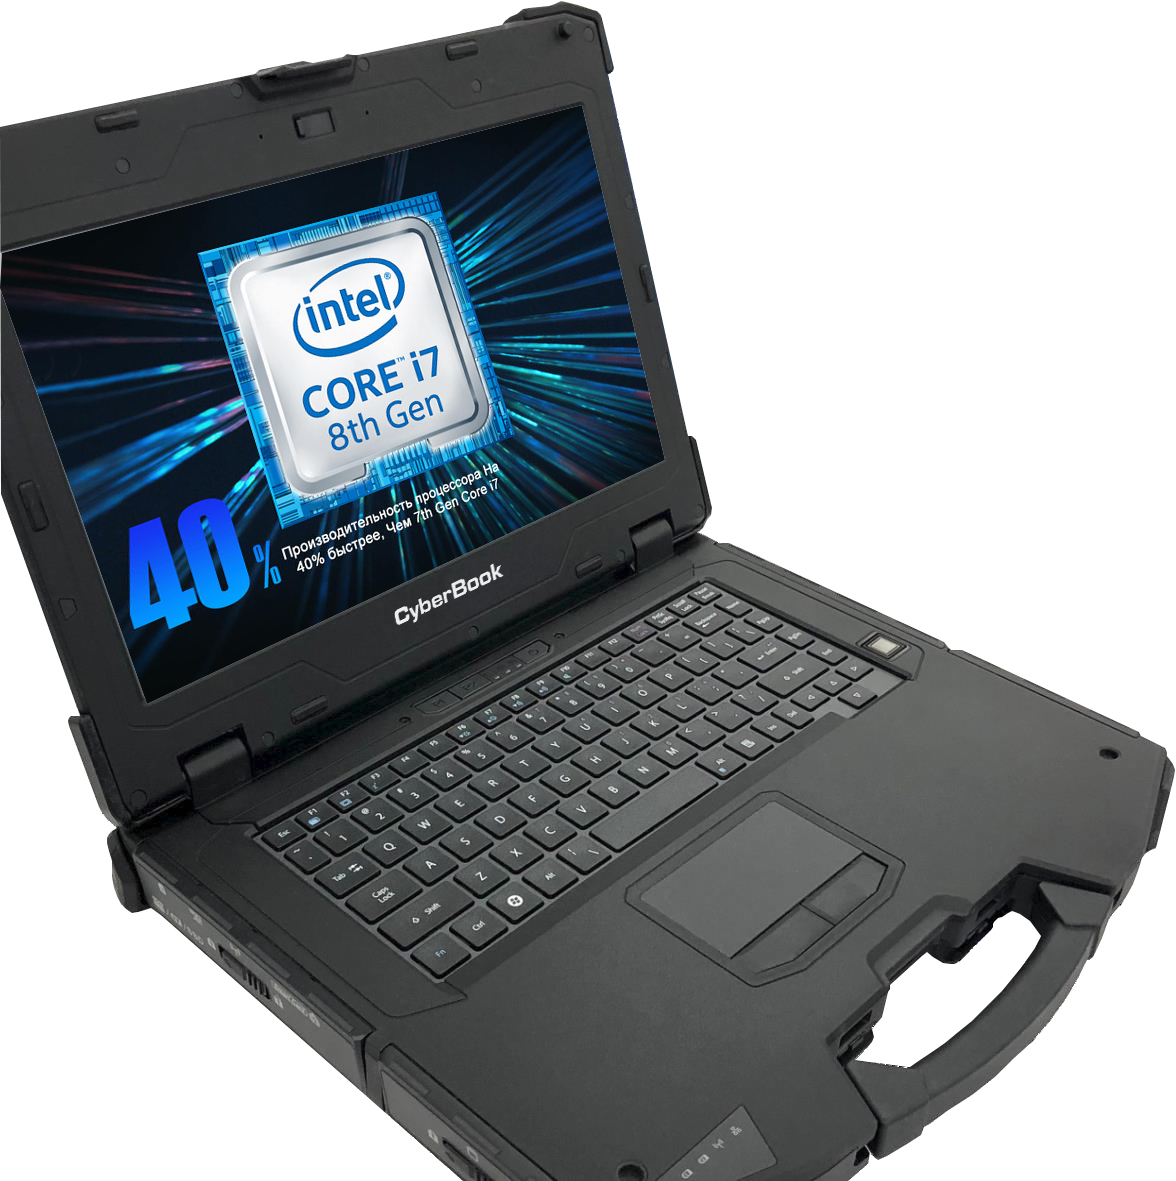 CyberBook R854 Производительность нового поколения